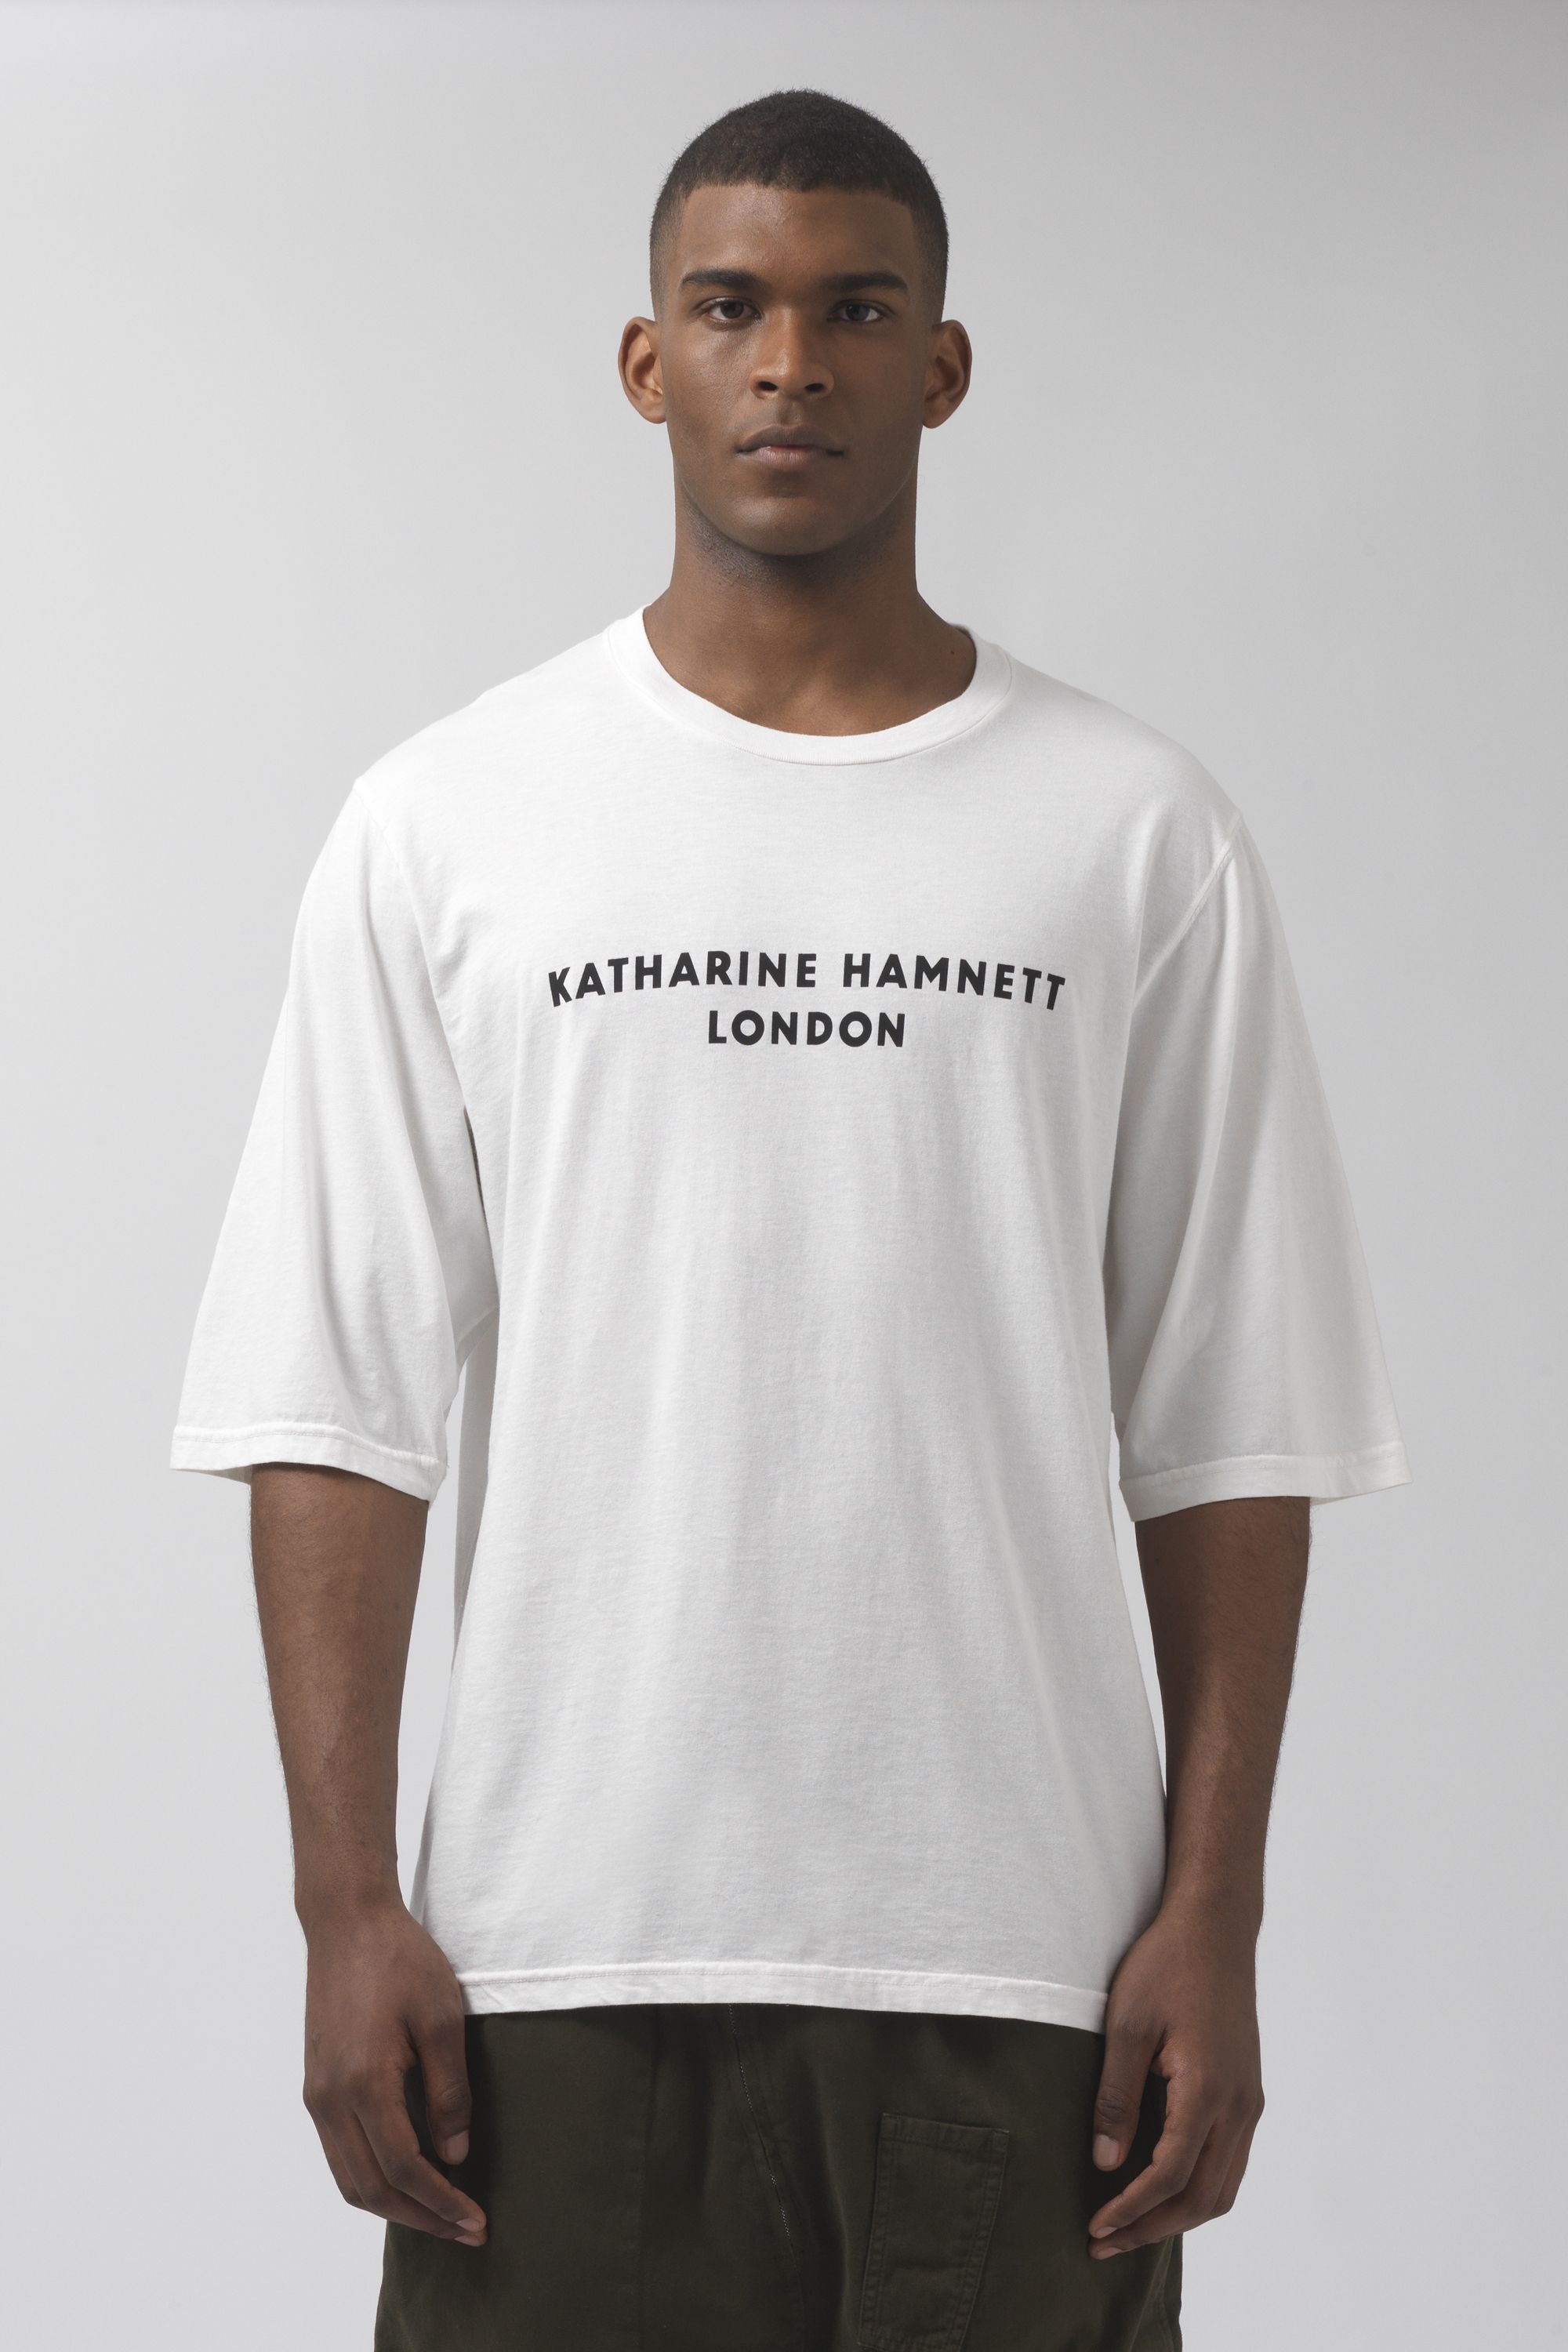 Katharine Hamnett London - George white organic cotton t-shirt